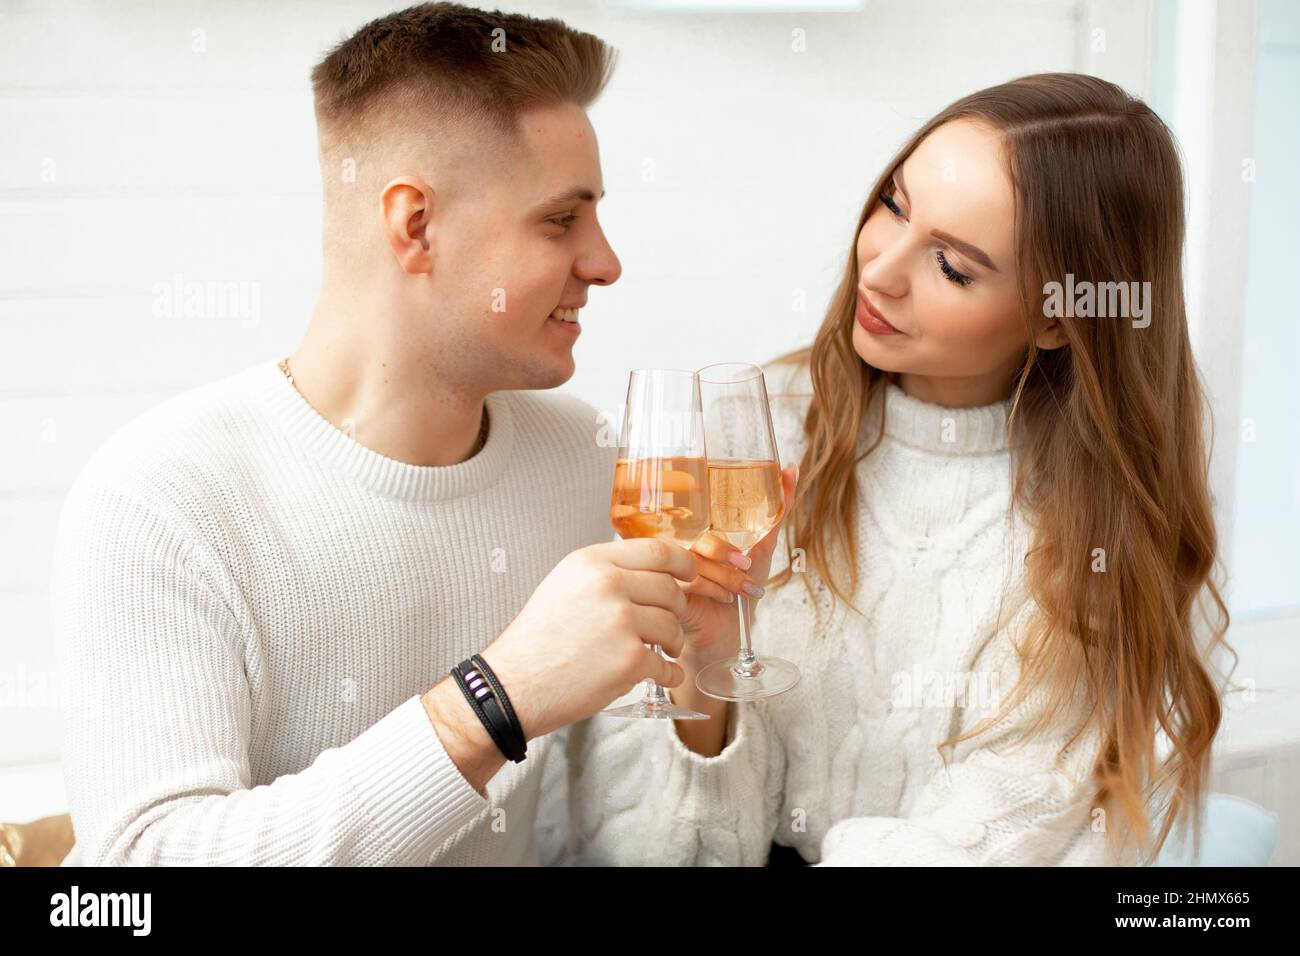 Giovani persone belle bere vino da bicchieri di vetro celebrare la conoscenza. Amore a prima vista. Relazioni romantiche. Amore e tenerezza Foto Stock